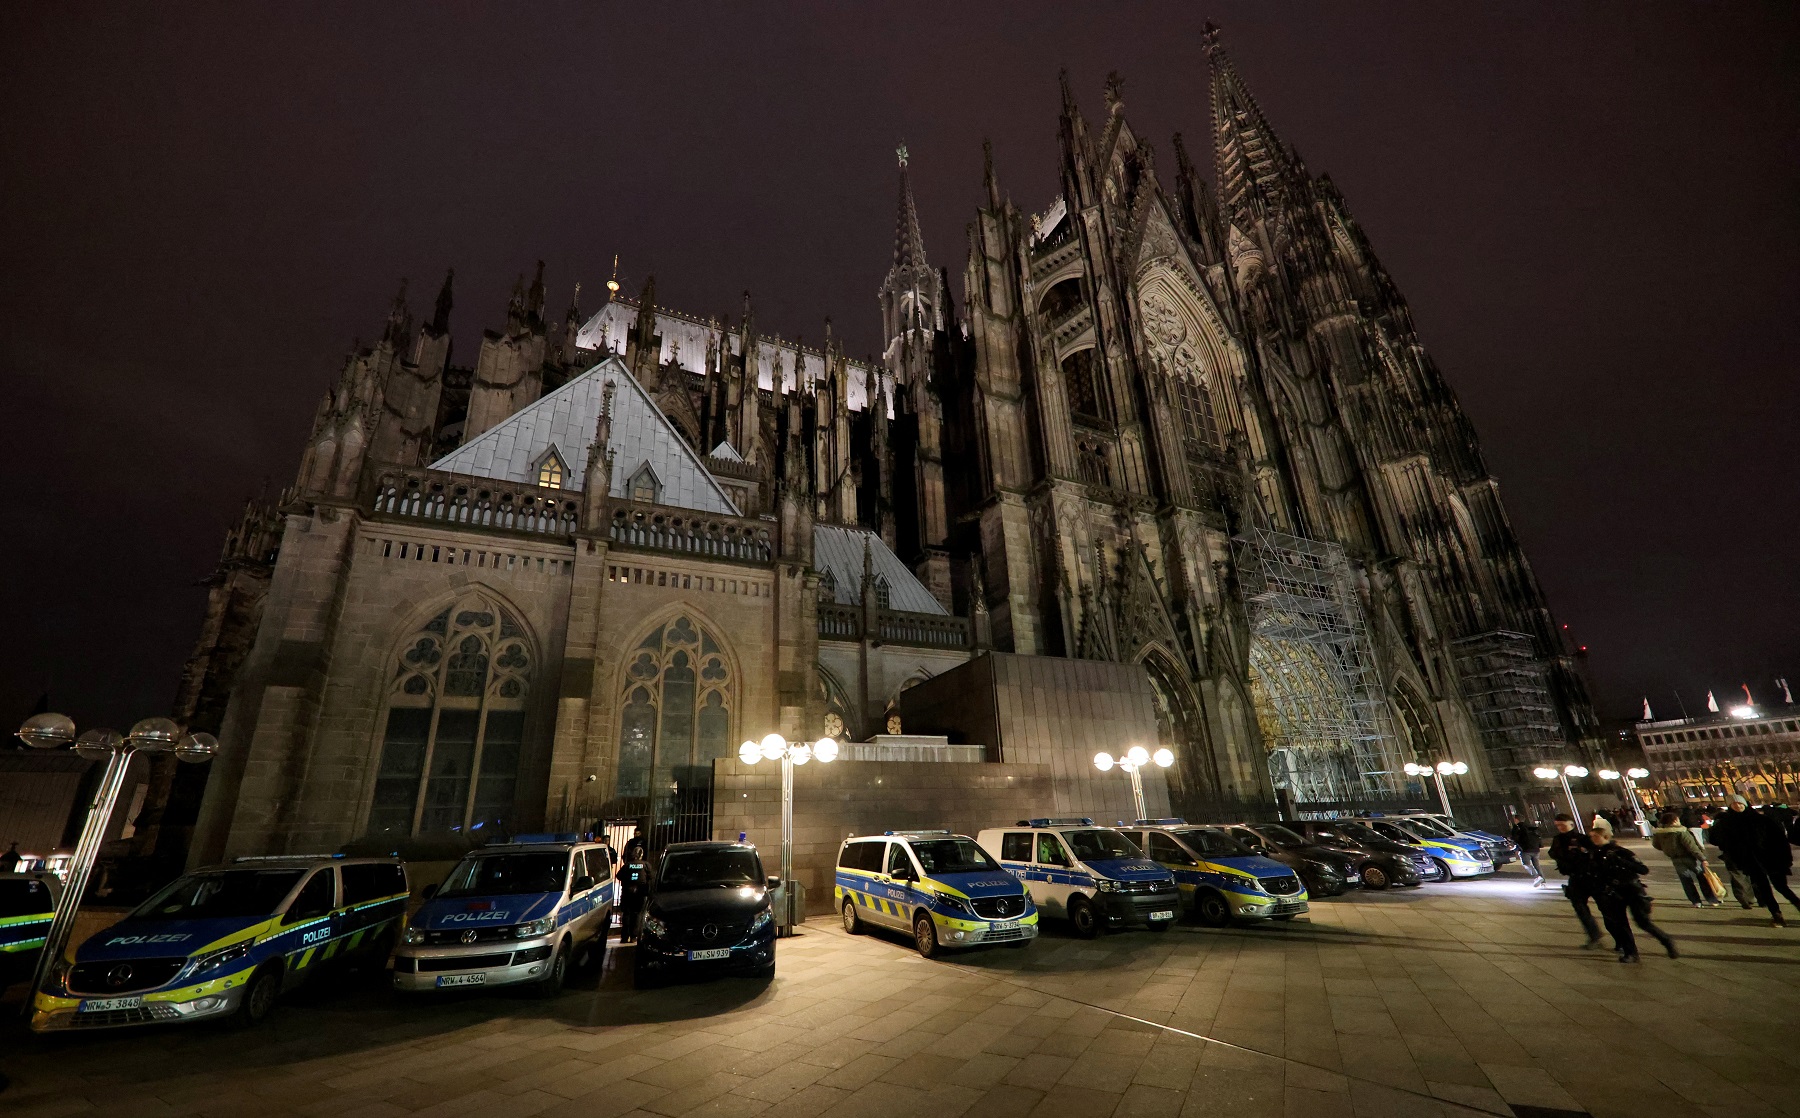 Γερμανία: Συλλήψεις 3 ισλαμιστών που ετοίμαζαν επίθεση στον καθεδρικό ναό της Κολωνίας